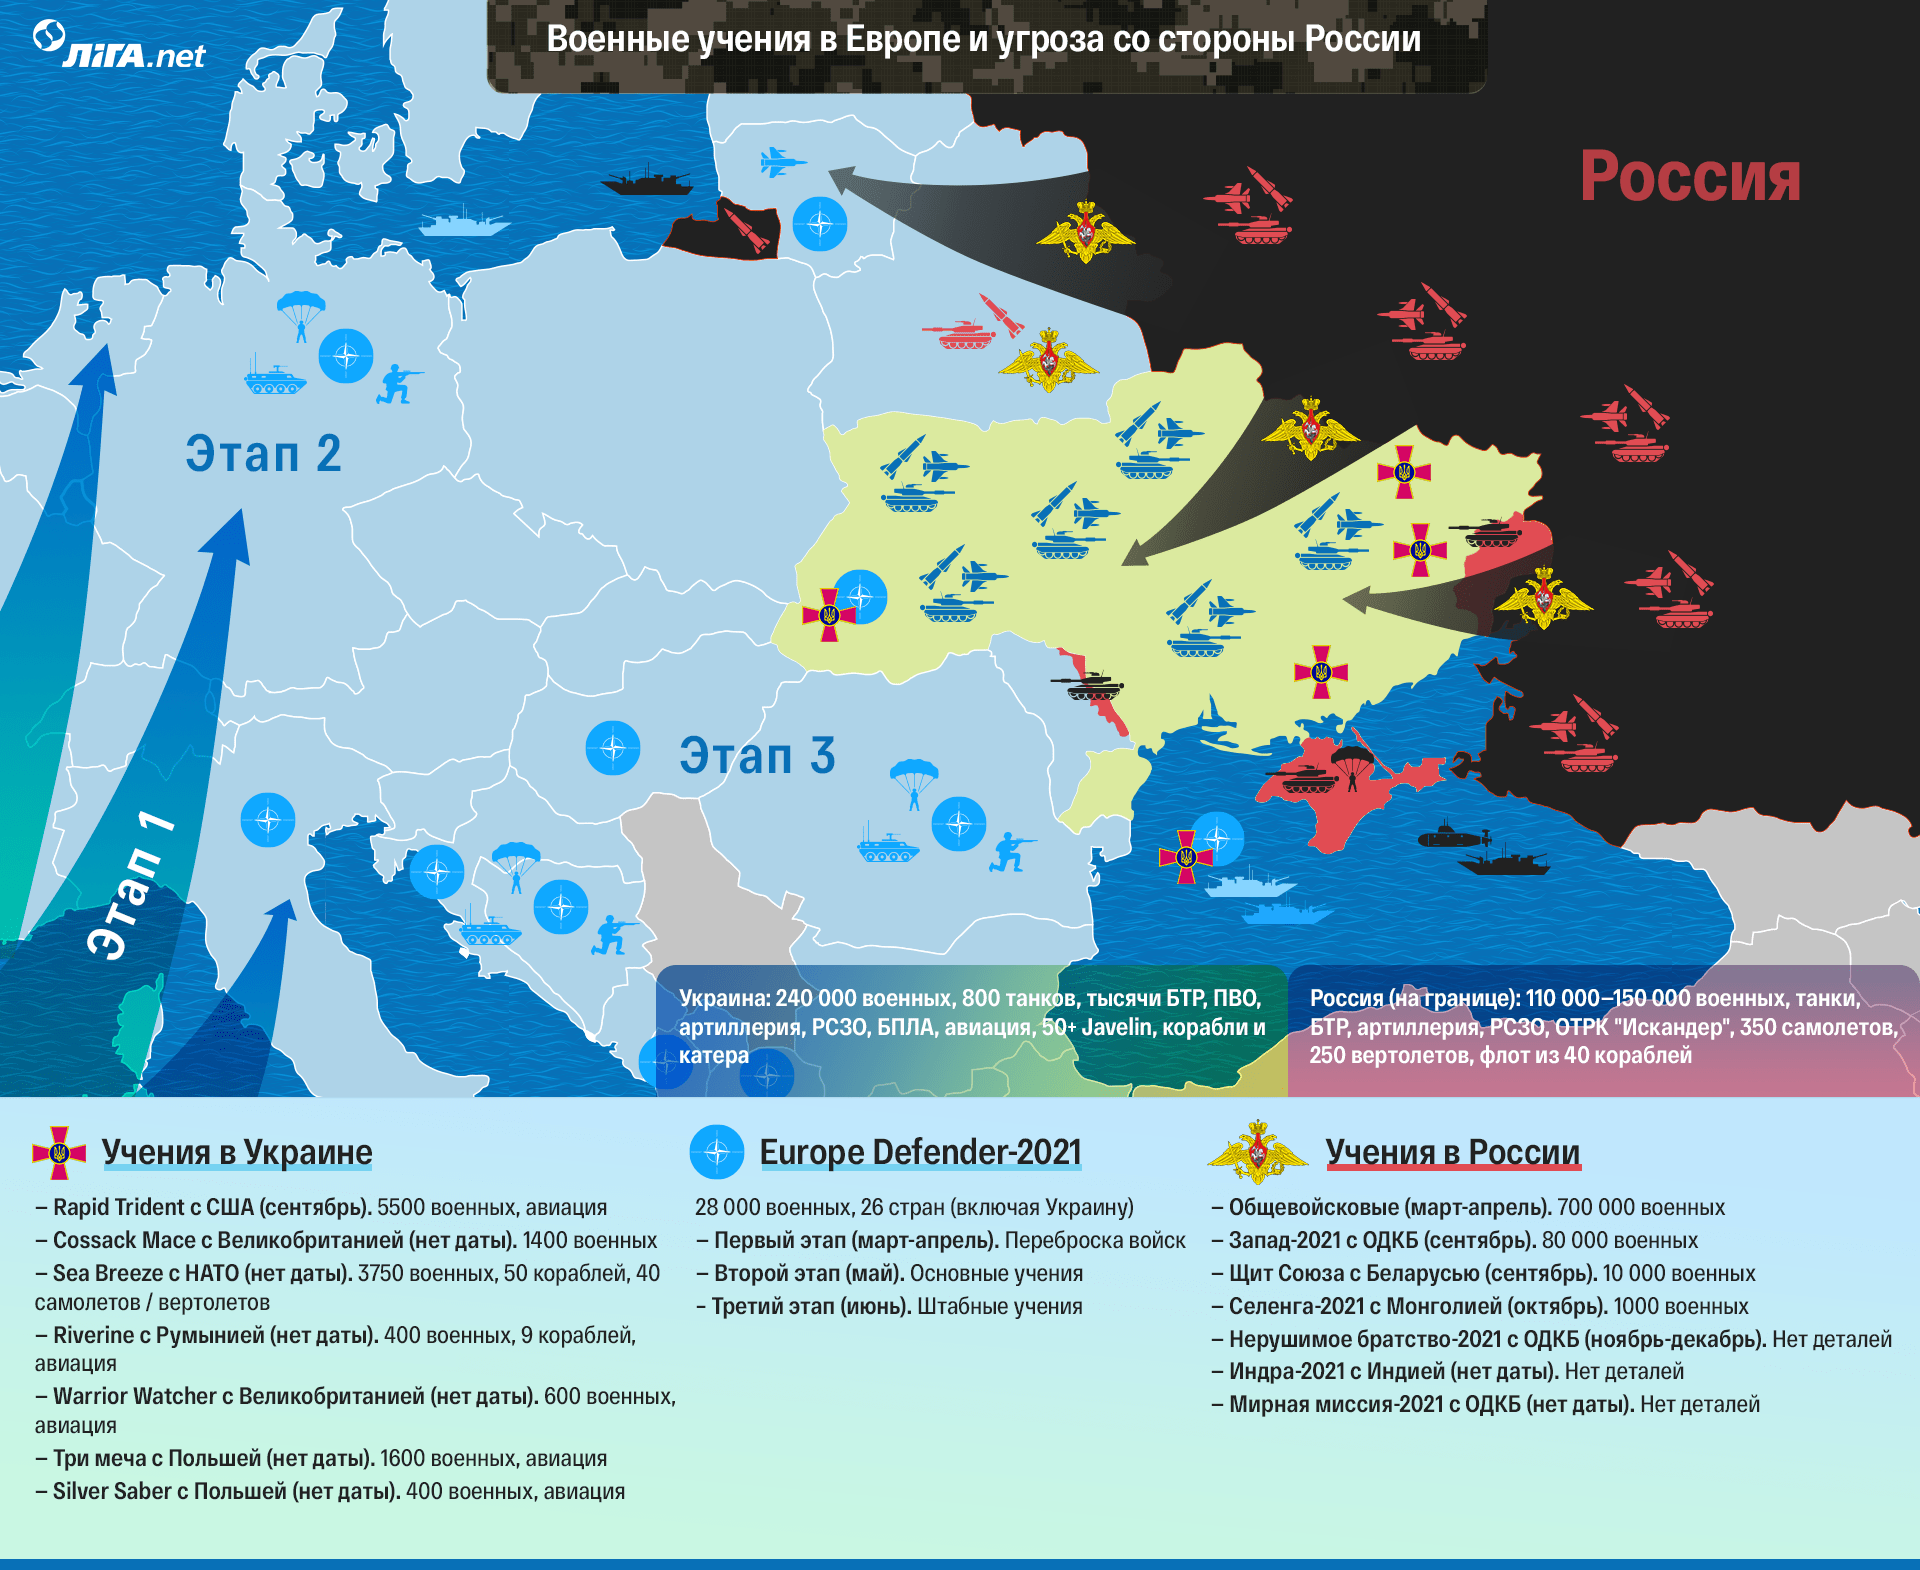 Путин у ворот. Как выглядит весь расклад военных сил в Европе